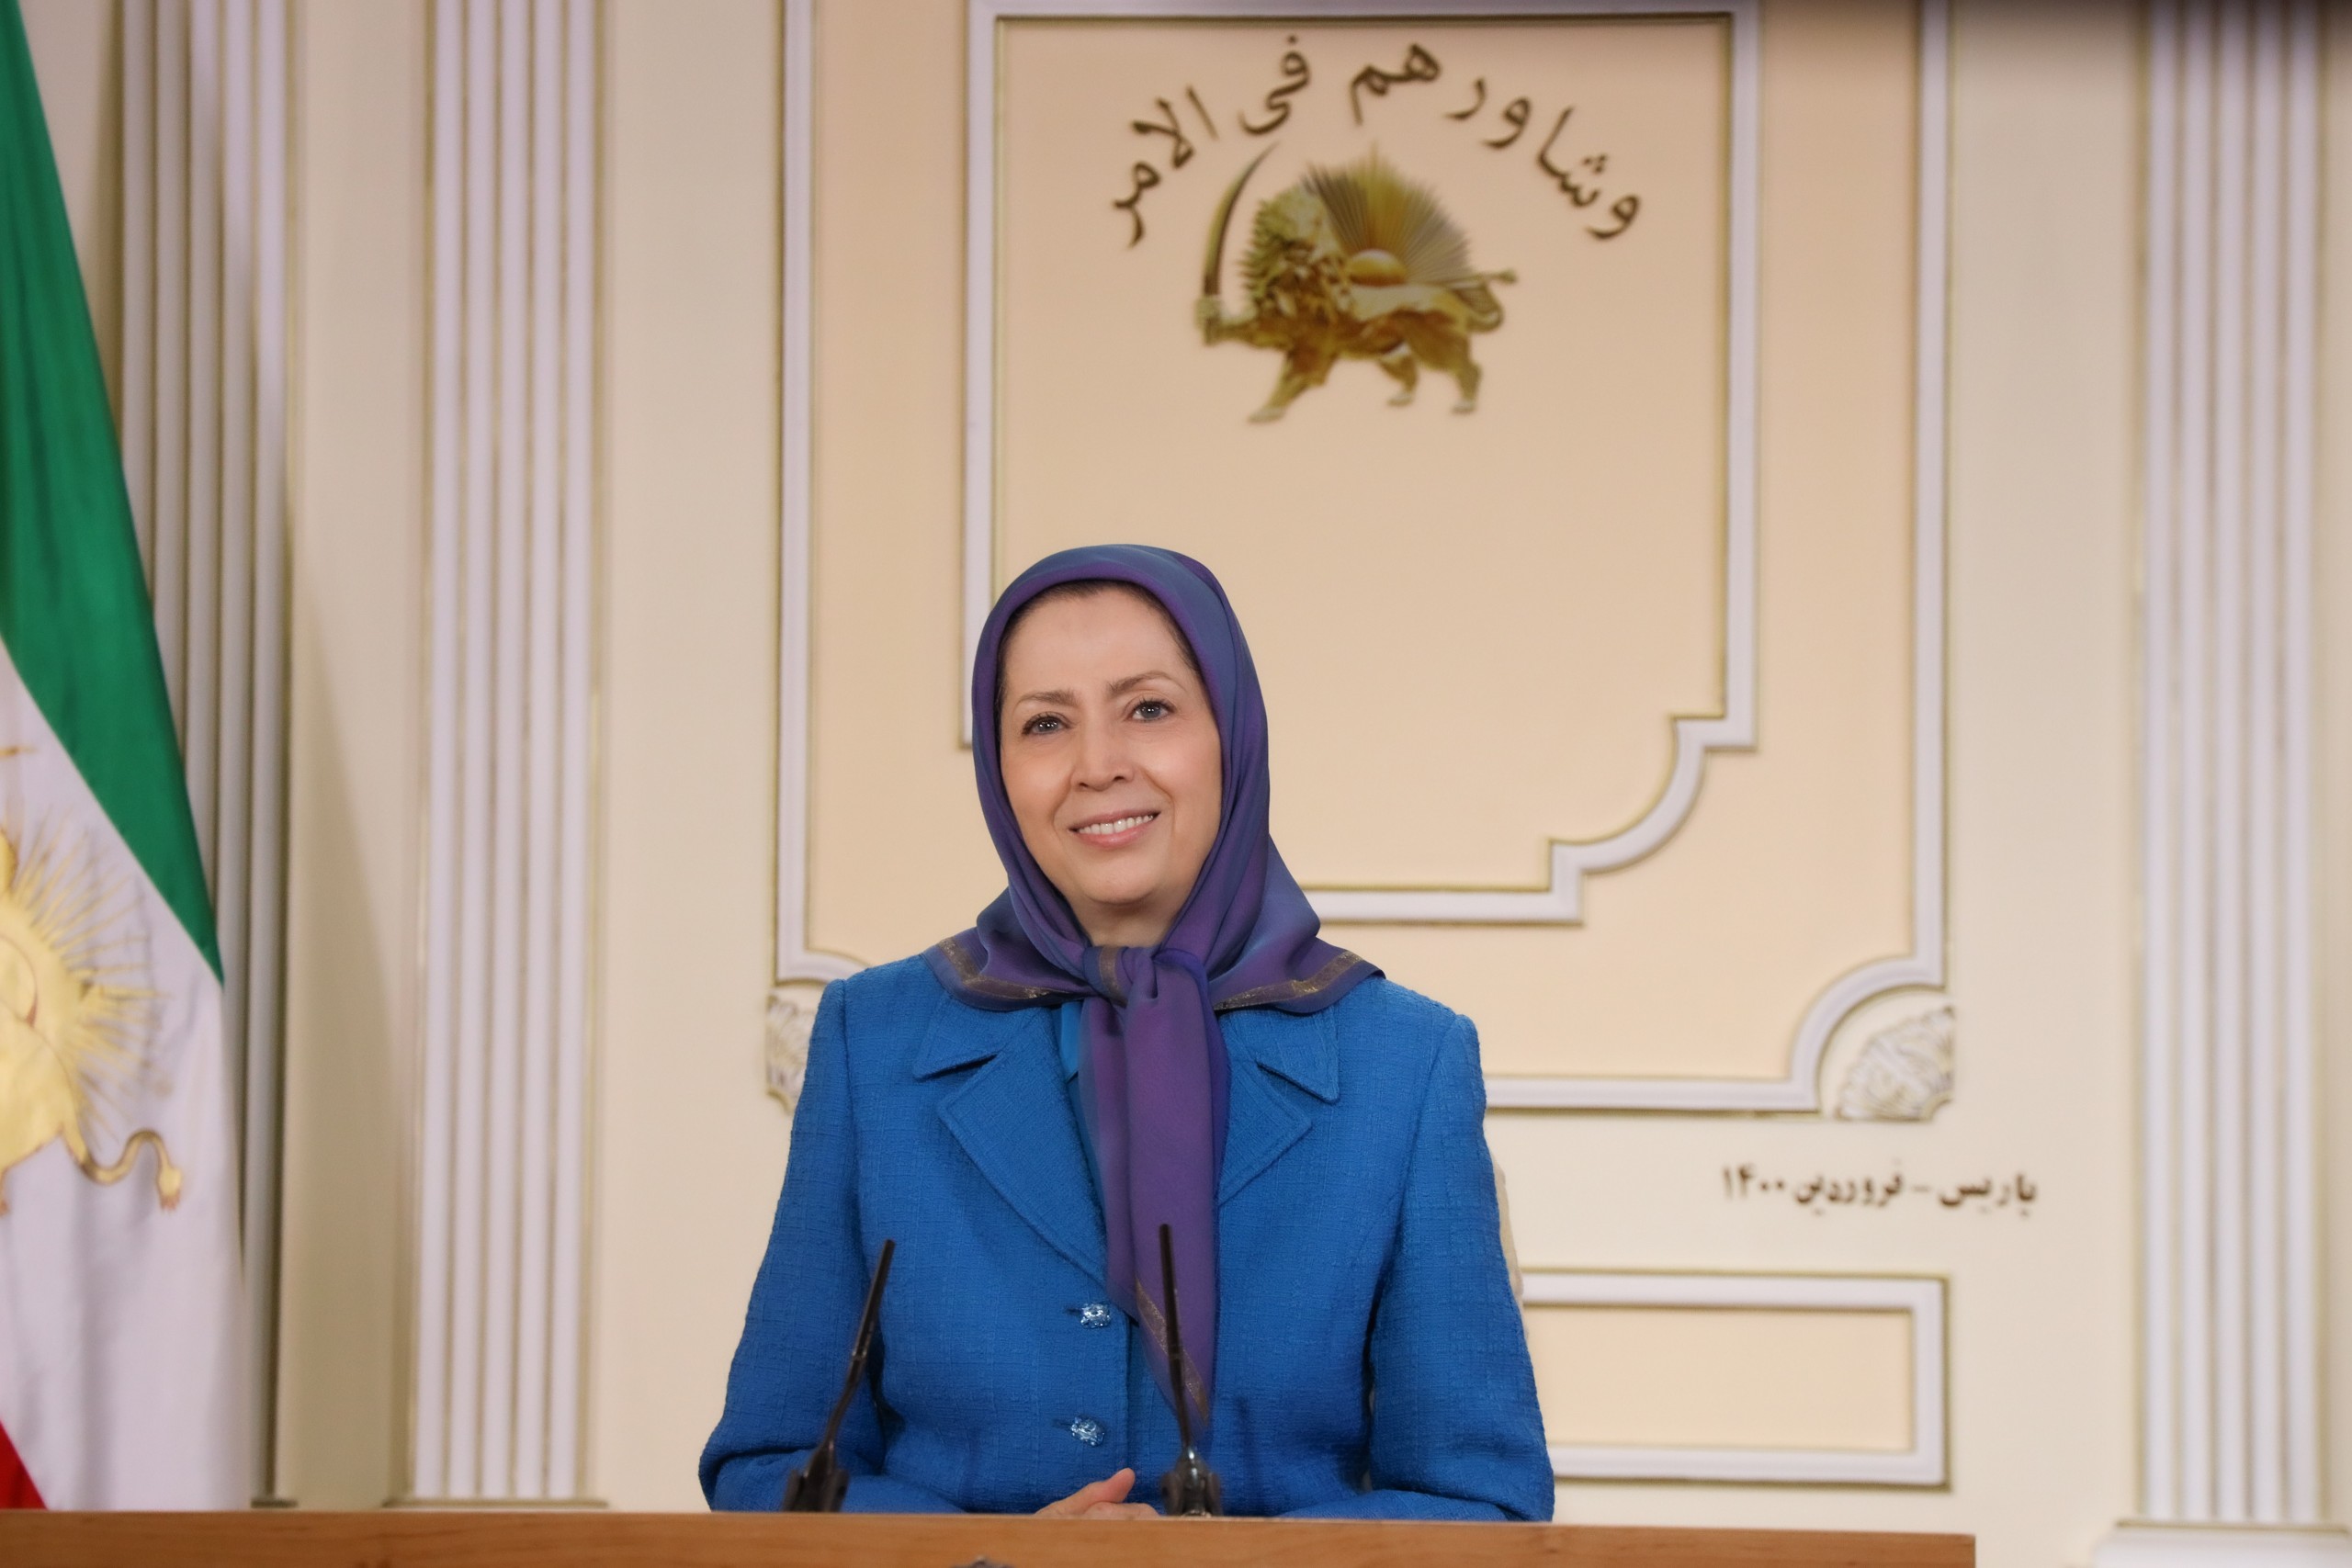 مريم رجوي: الحالة الثورية للمجتمع الإيراني، تألق البديل الديمقراطي الوحيد للنظام